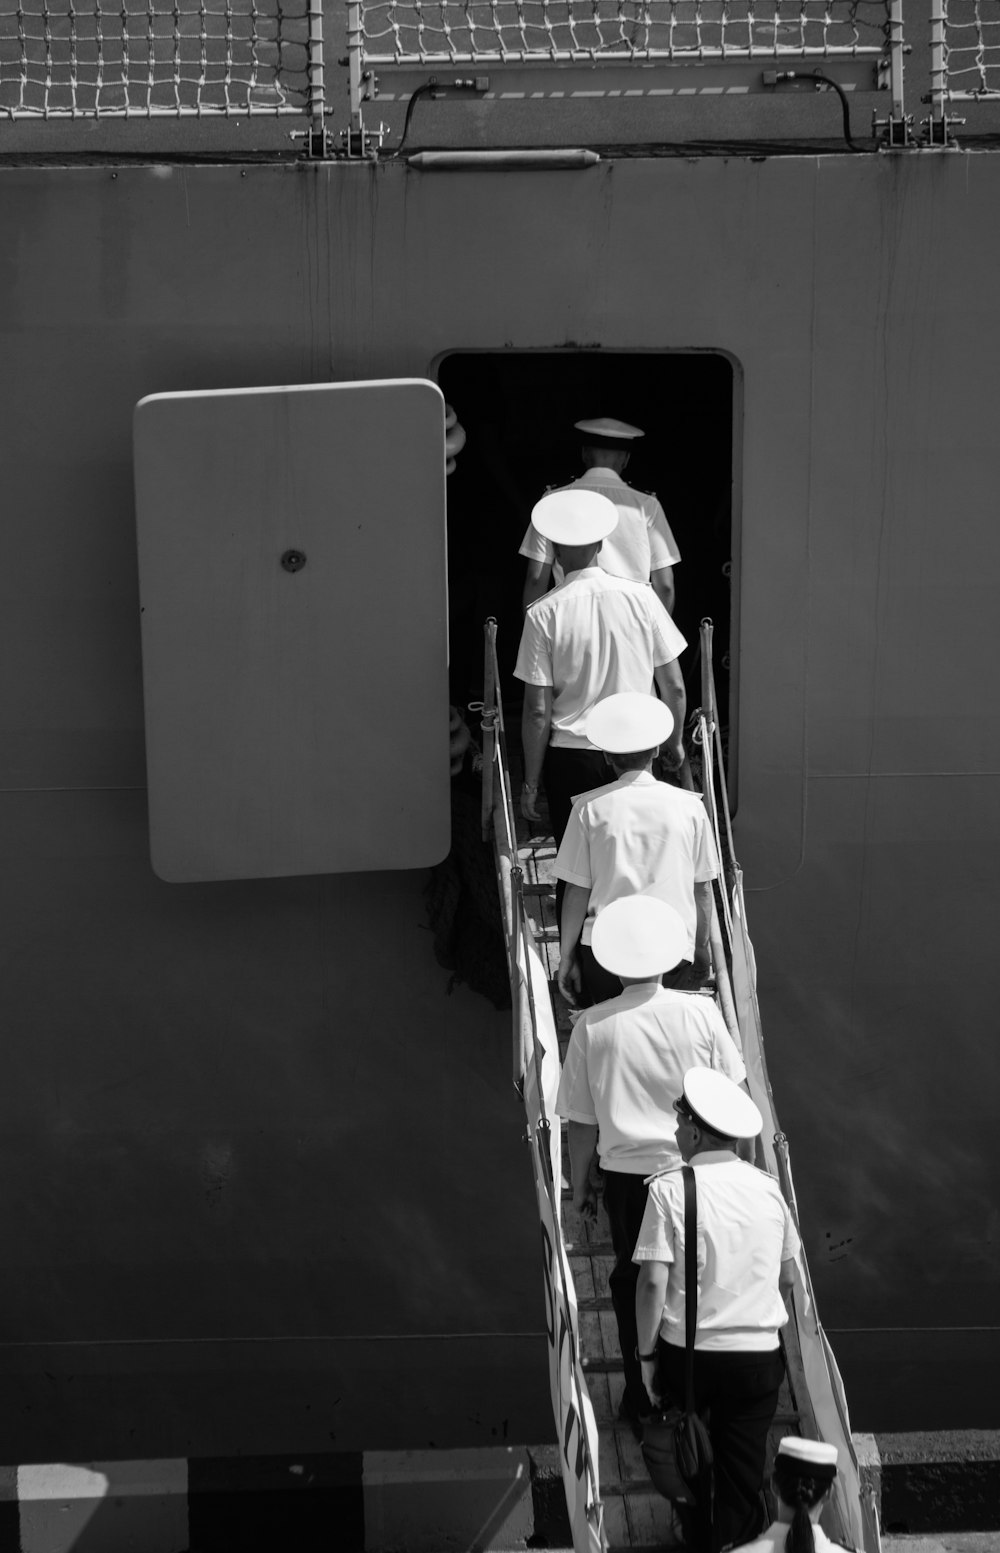 Personas en uniforme subiendo en las escaleras del avión en fotografía en escala de grises